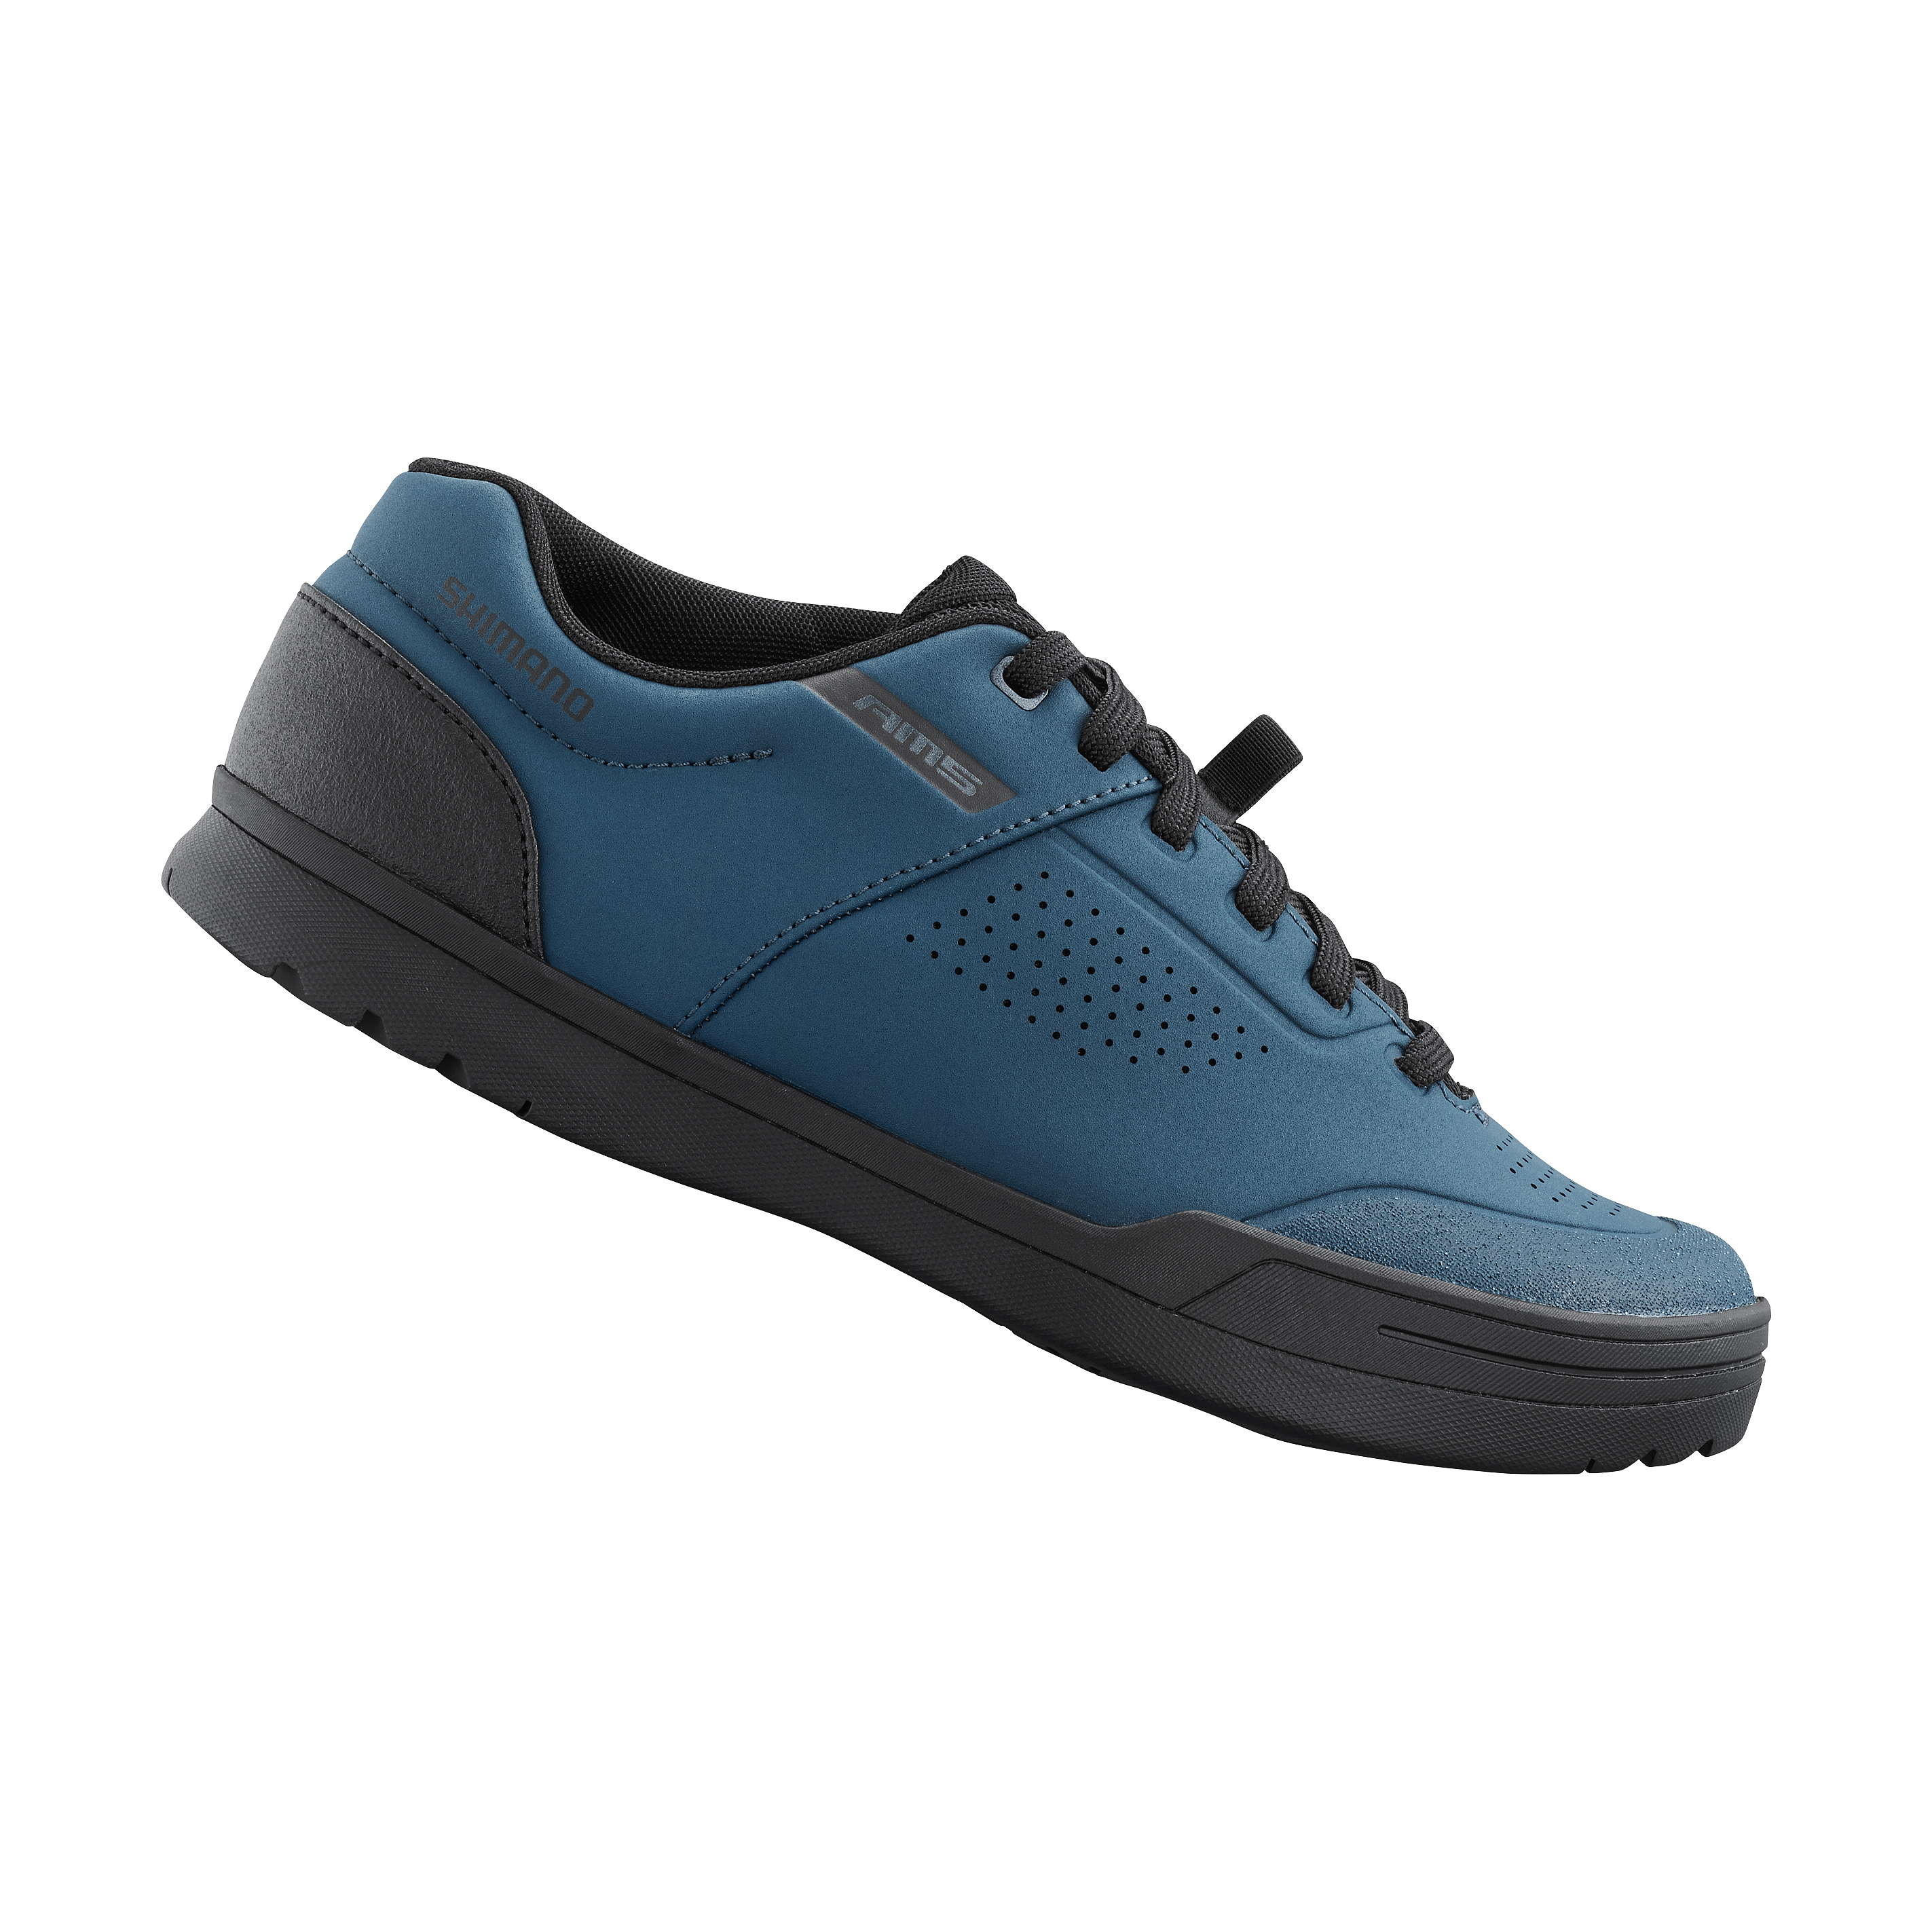 SHIMANO gravity obuv SH-AM503, dámská, modrá, 42